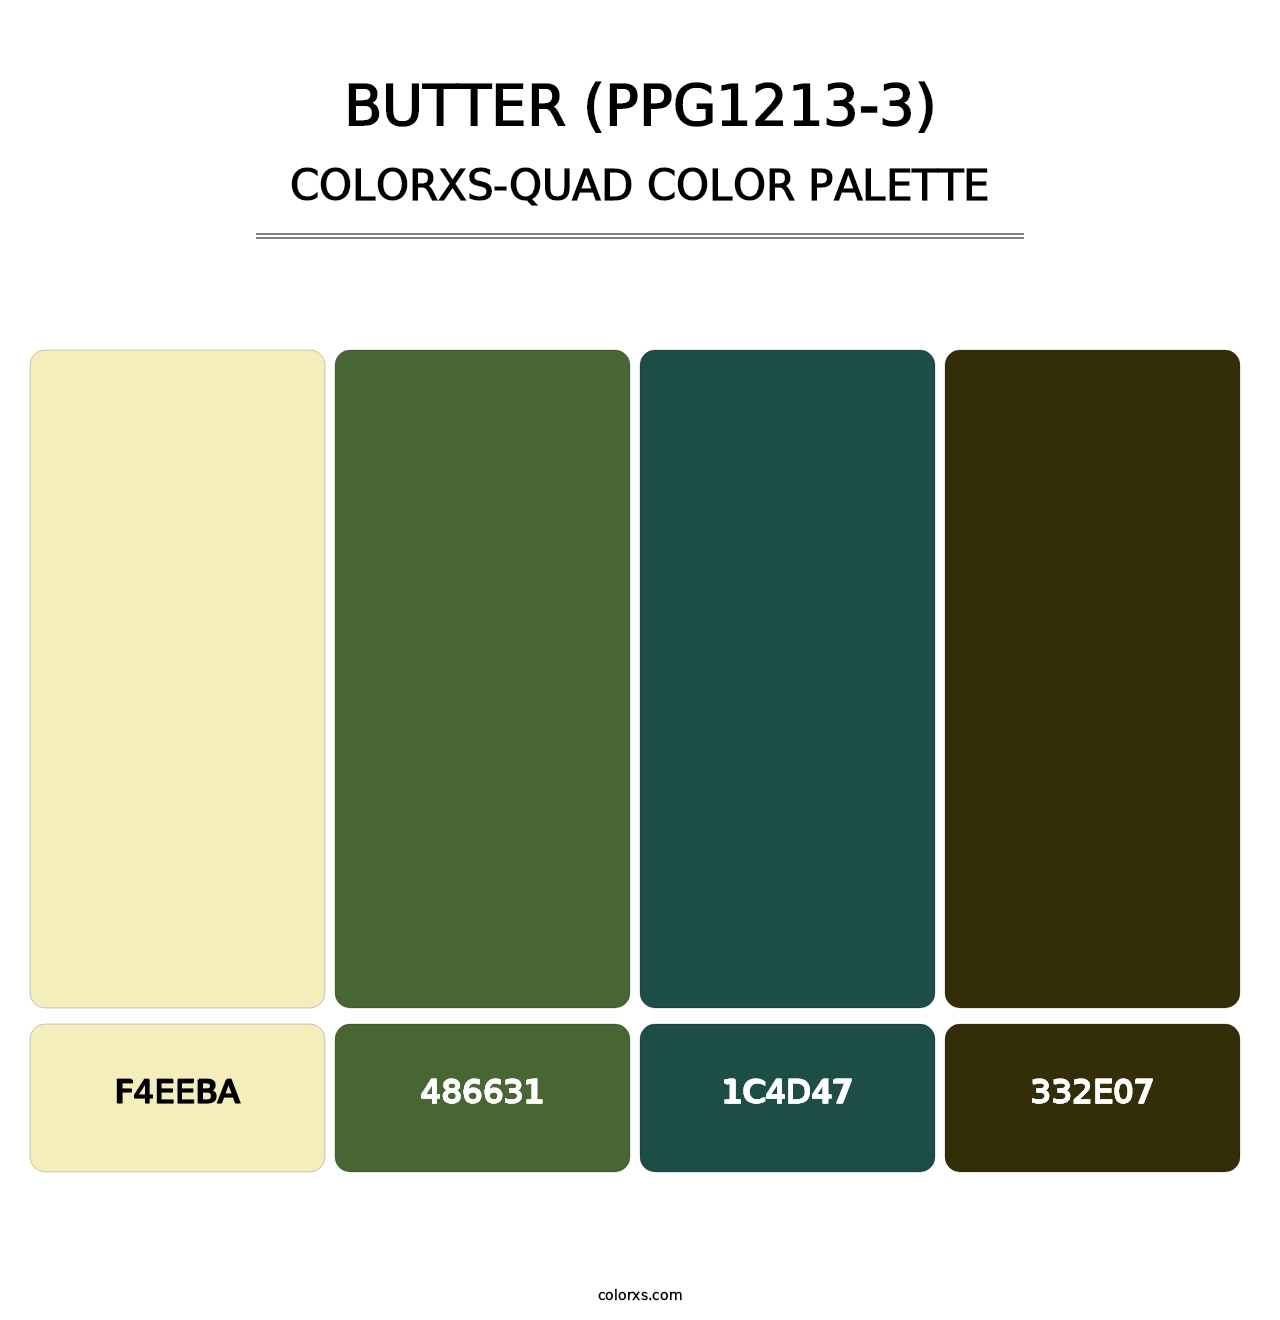 Butter (PPG1213-3) - Colorxs Quad Palette